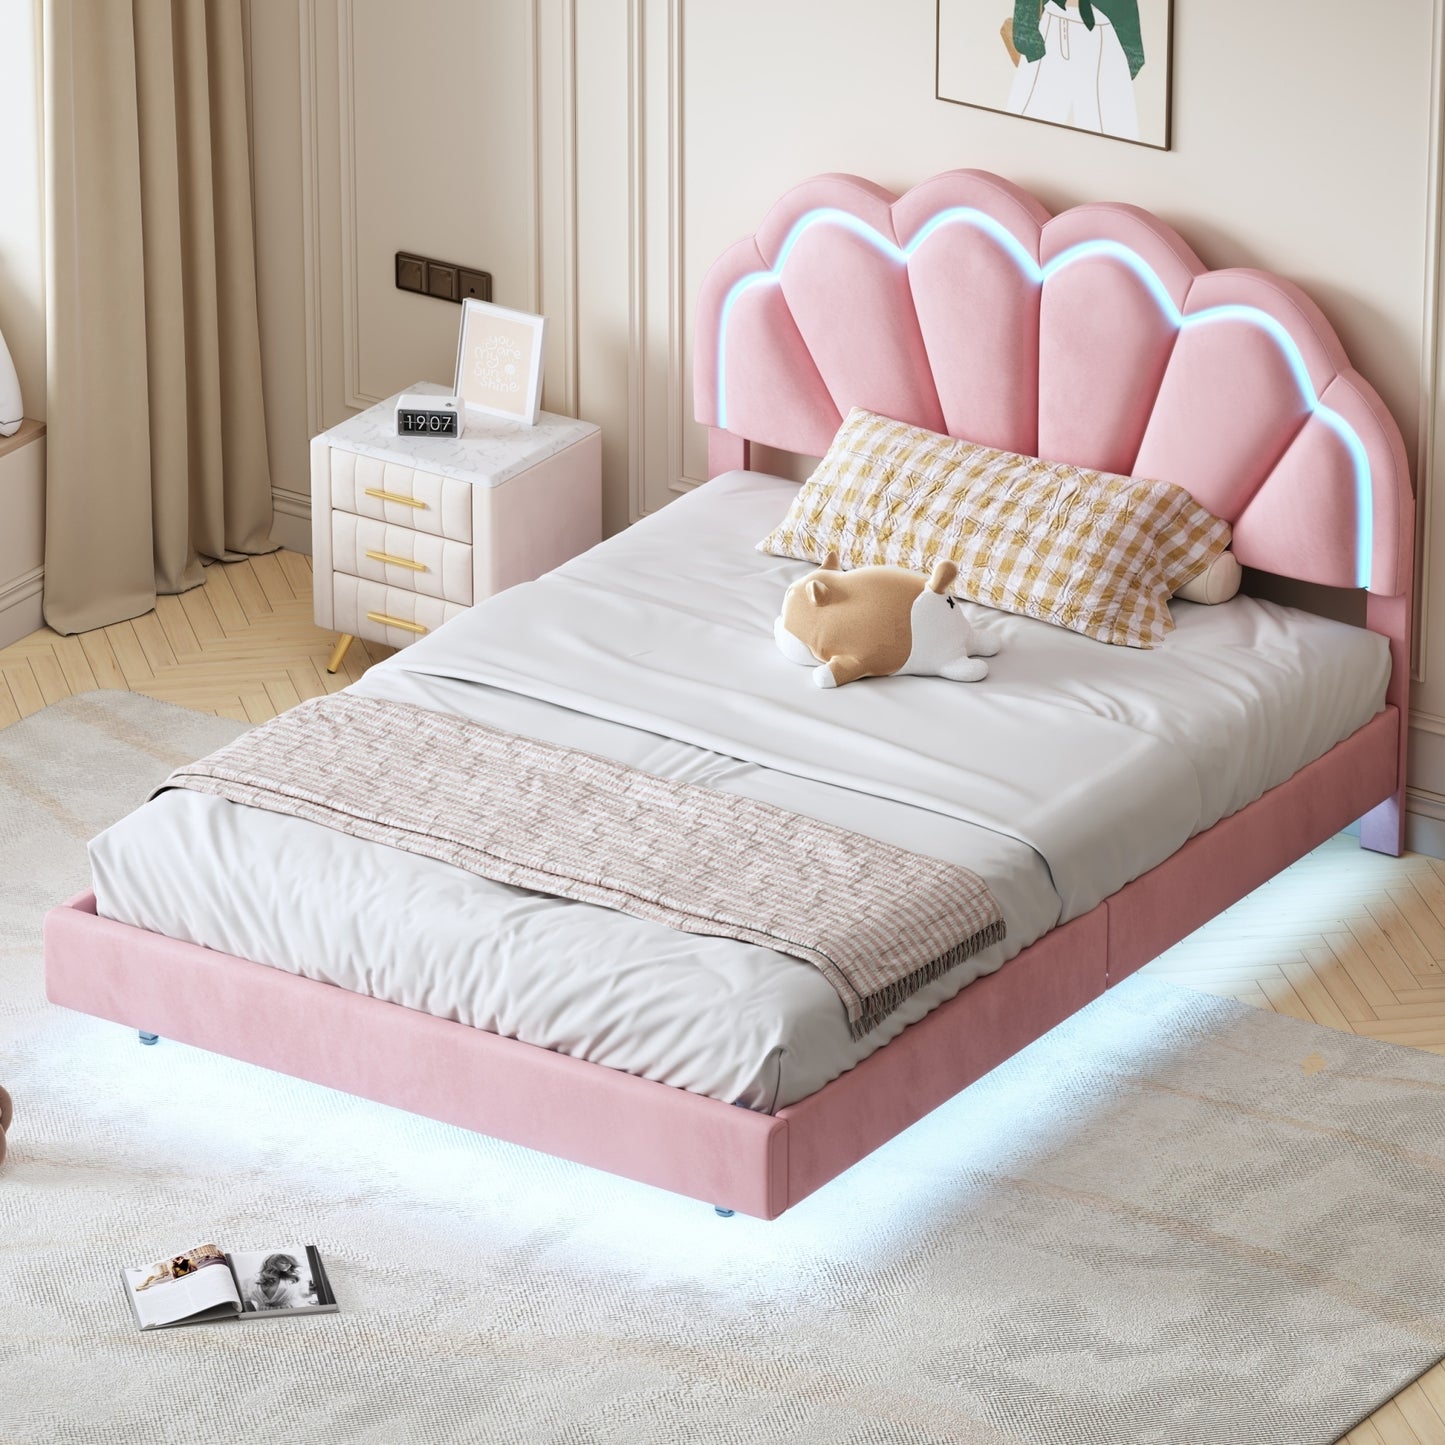 Full Upholstered Smart LED Bed Frame with Elegant Flowers Headboard,Floating Velvet Platform LED Bed with Wooden Slats Support,Pink